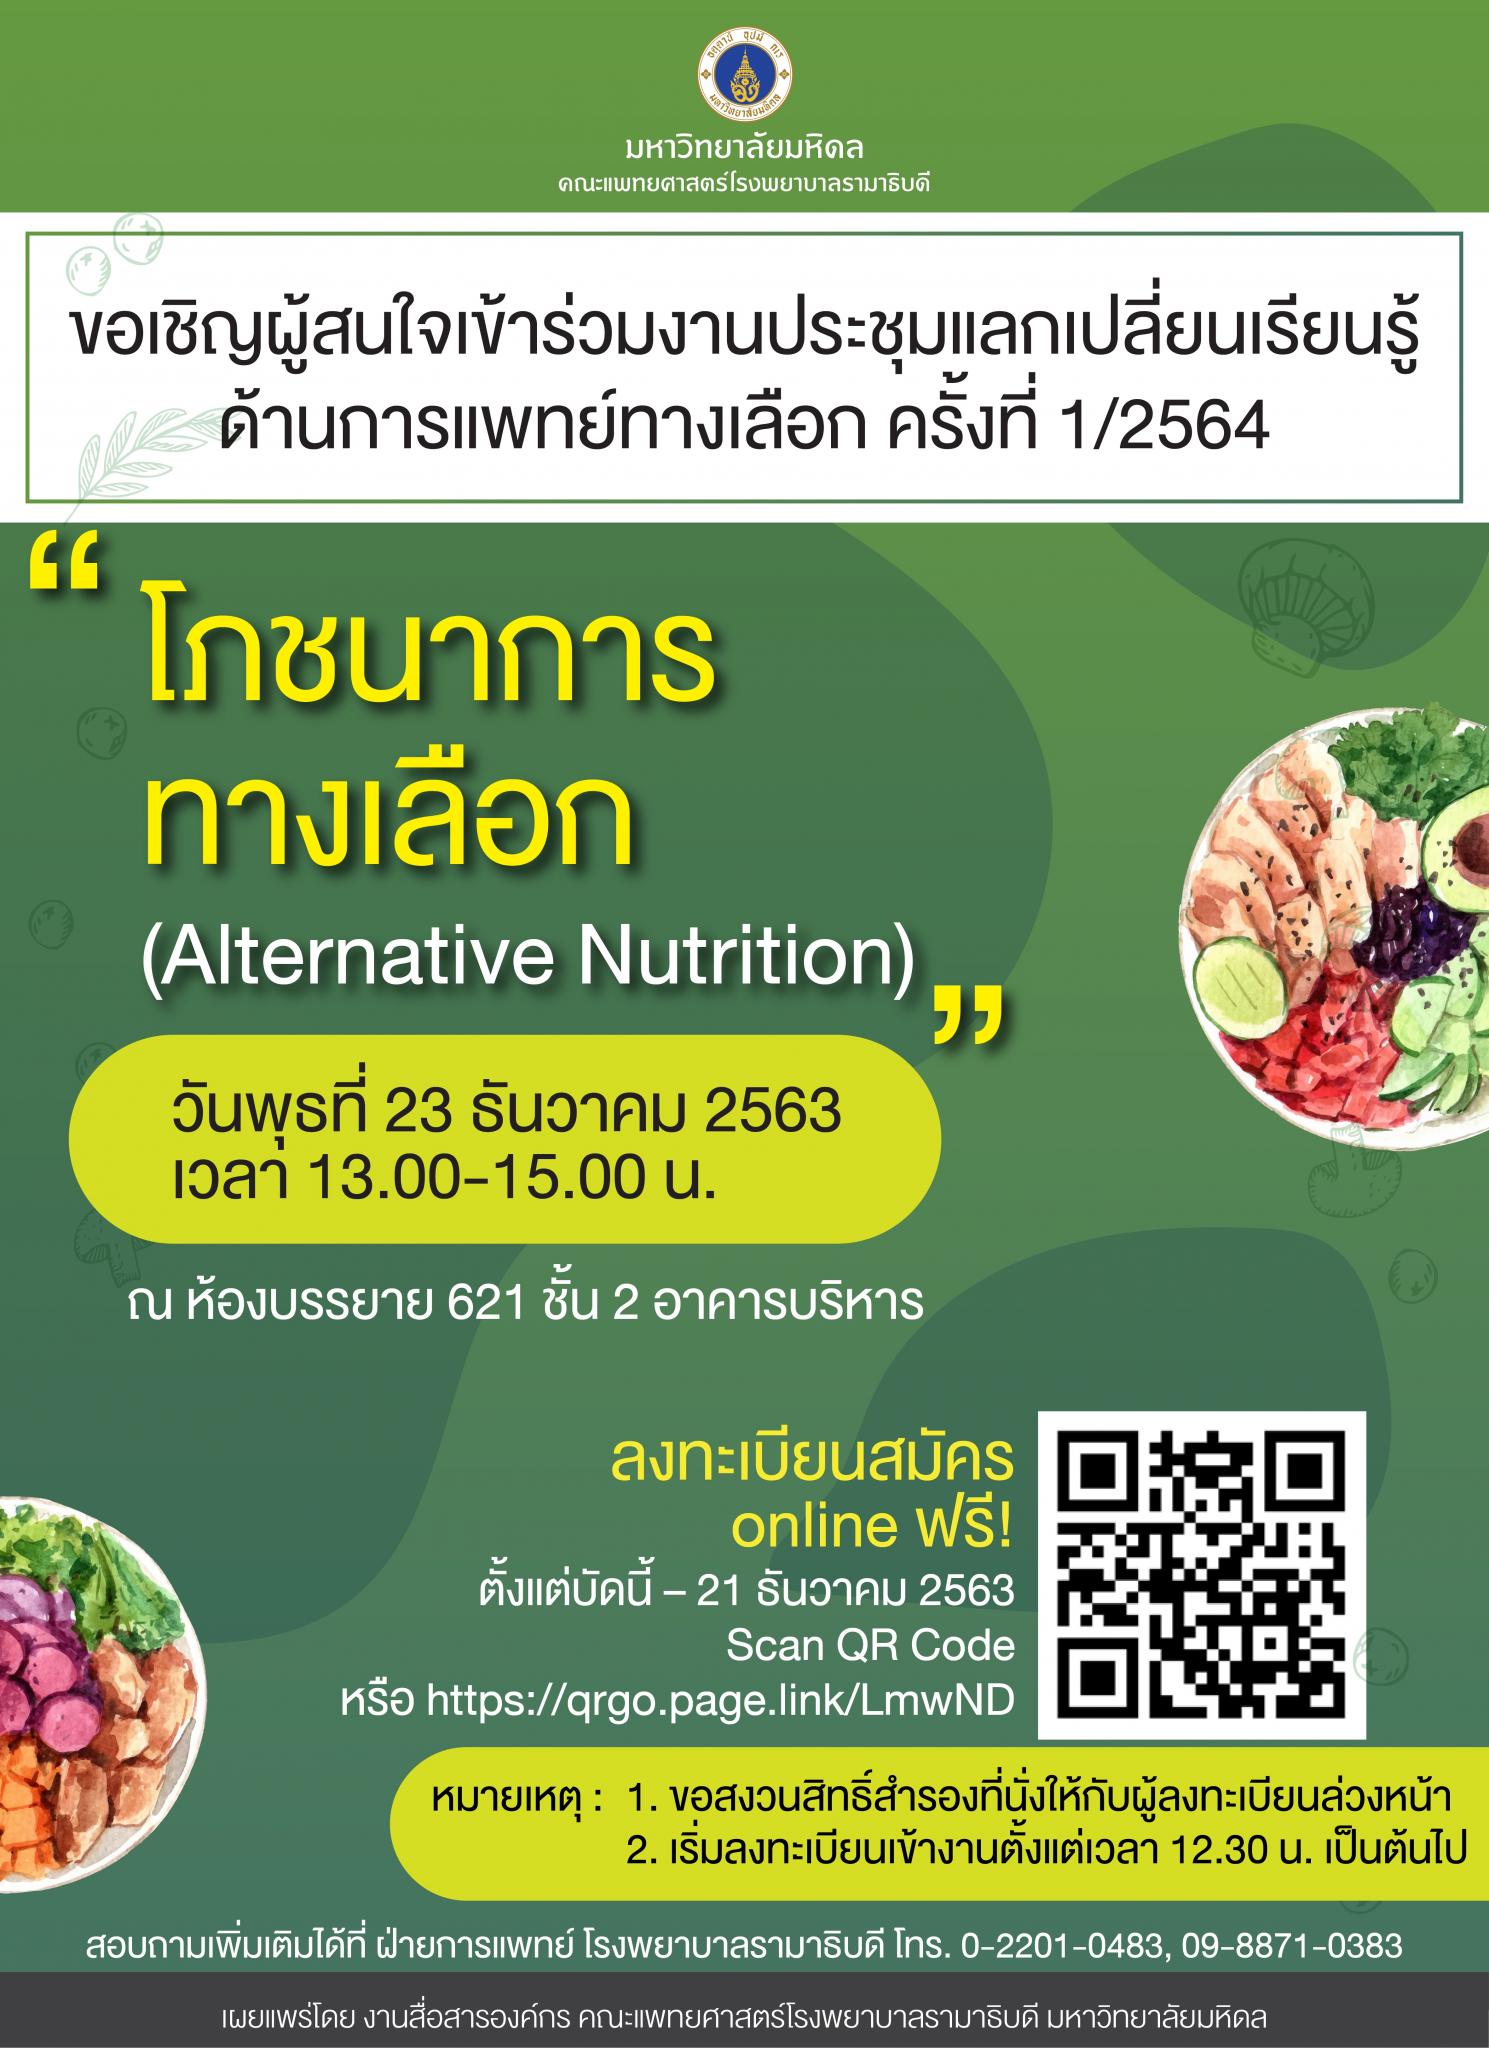 ขอเชิญเข้าร่วมงานประชุมแลกเปลี่ยนเรียนรู้ด้านการแพทย์ทางเลือก ครั้งที่ 1/2564 "โภชนาการทางเลือก (Alternative Nutrition)"